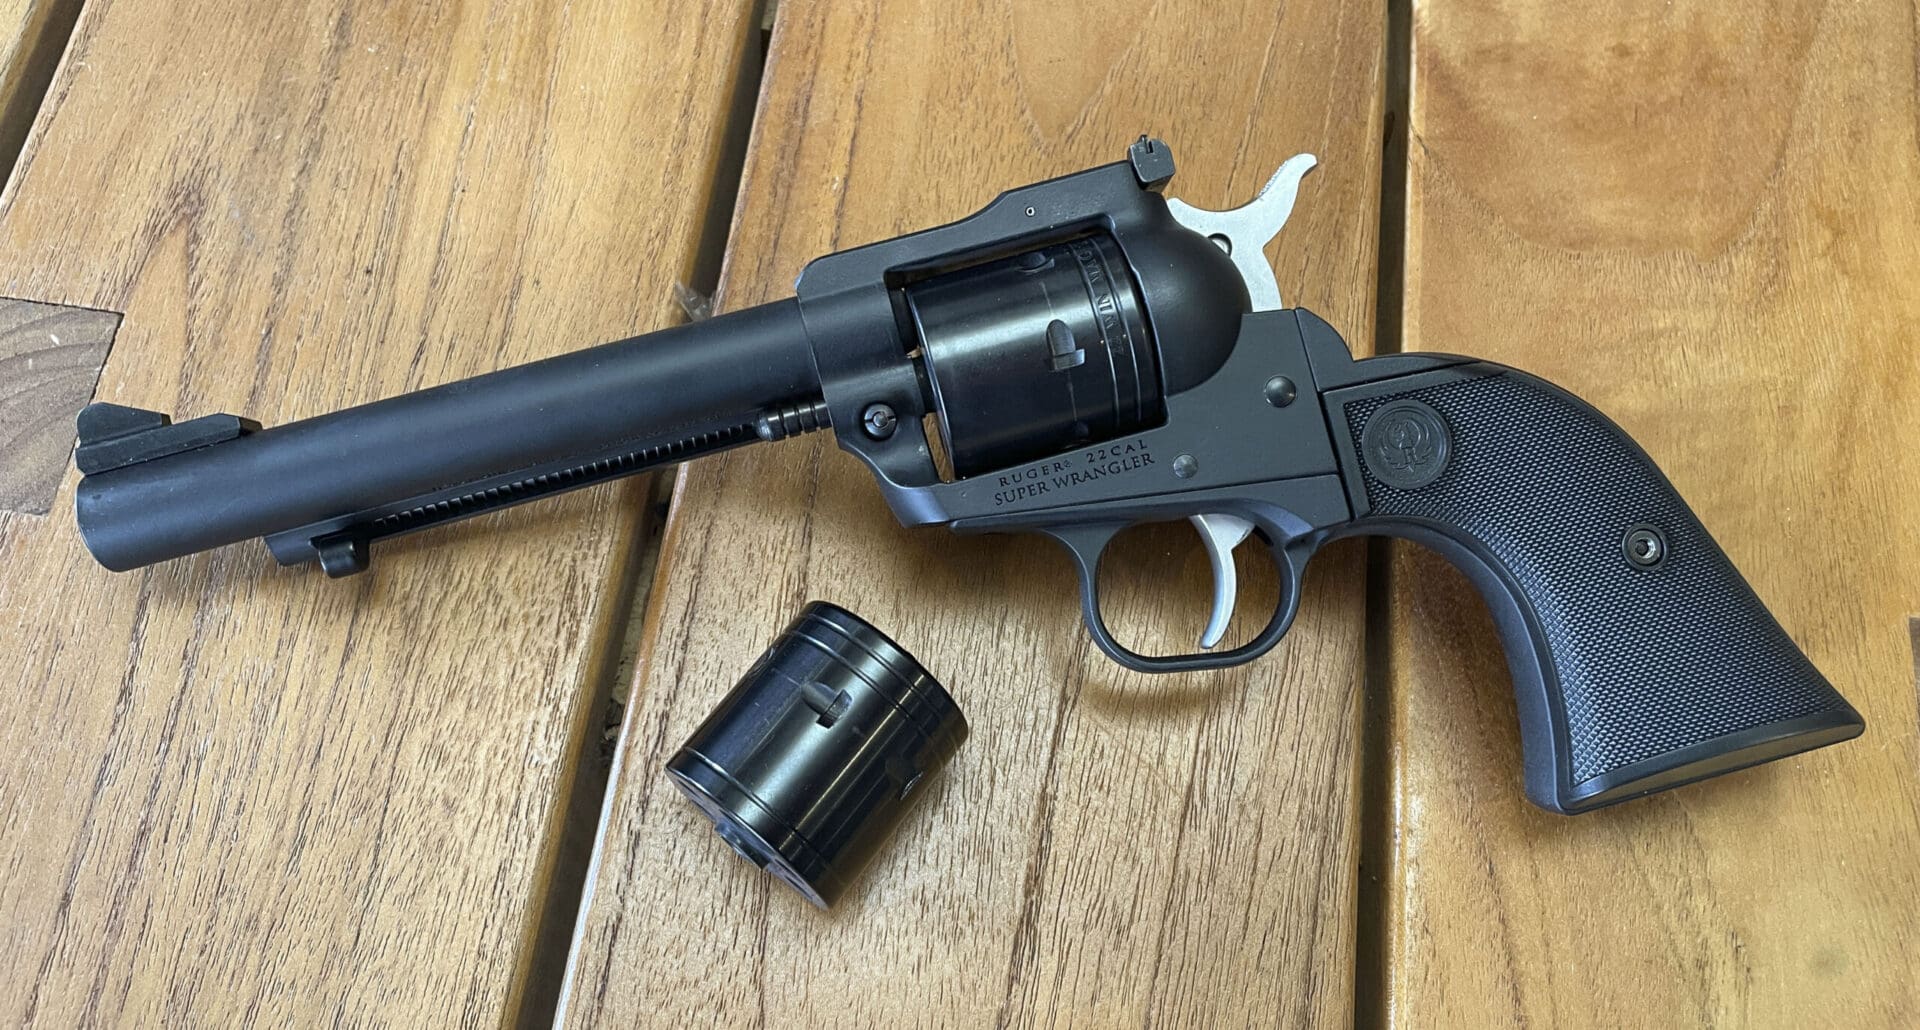 Ruger Super Wrangler single action .22 revolver